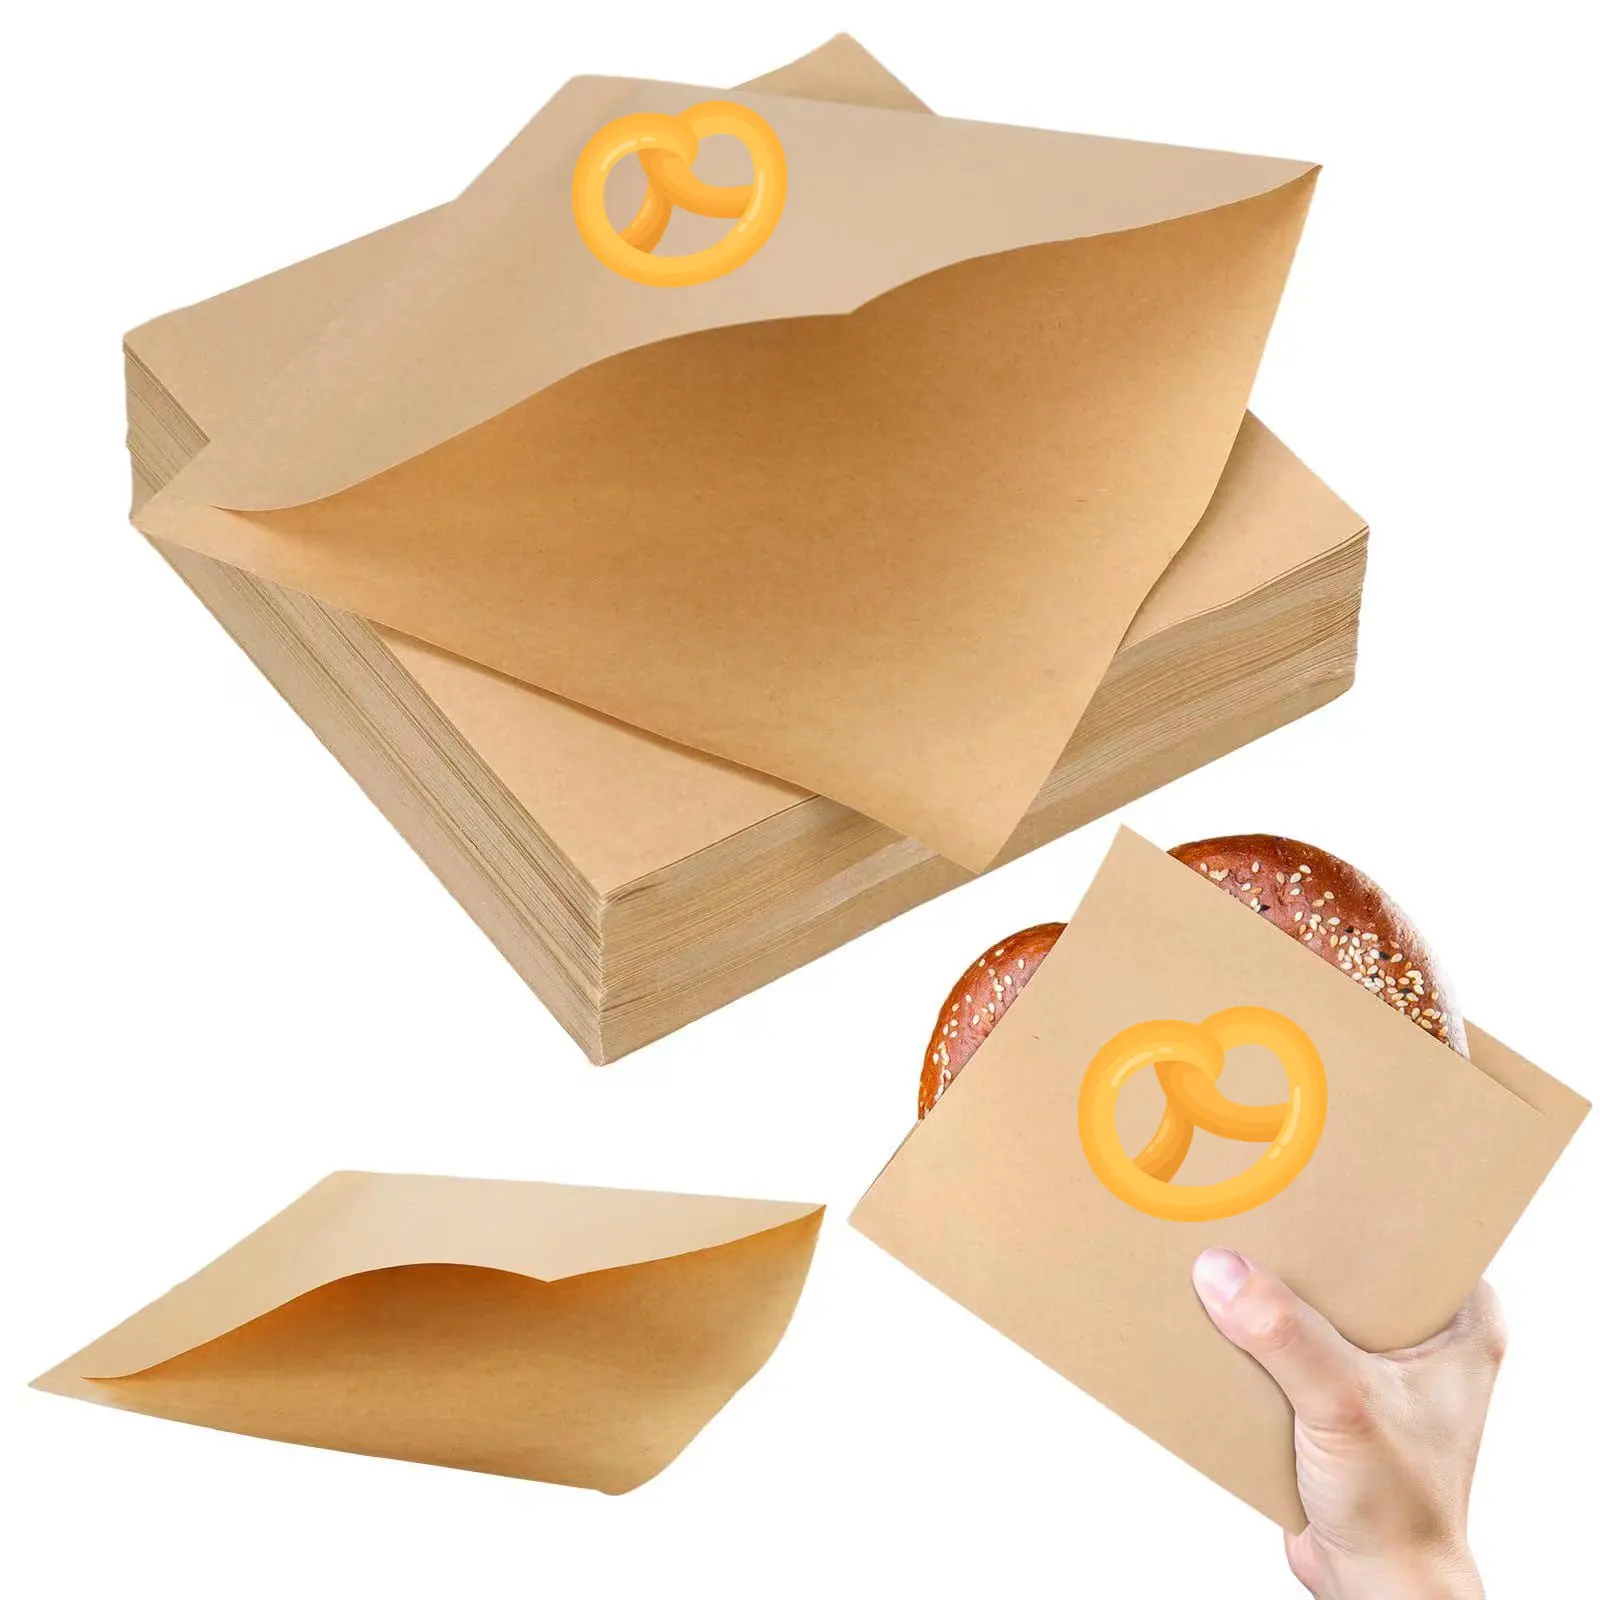 कस्टम नरम प्रीज़ेल पेपर सैंडविच रैपर ग्रीस प्रतिरोधी डबल खुले बैग स्नैक डोनट्स धारक त्रिकोण क्रोइसेंट पेपर बैग